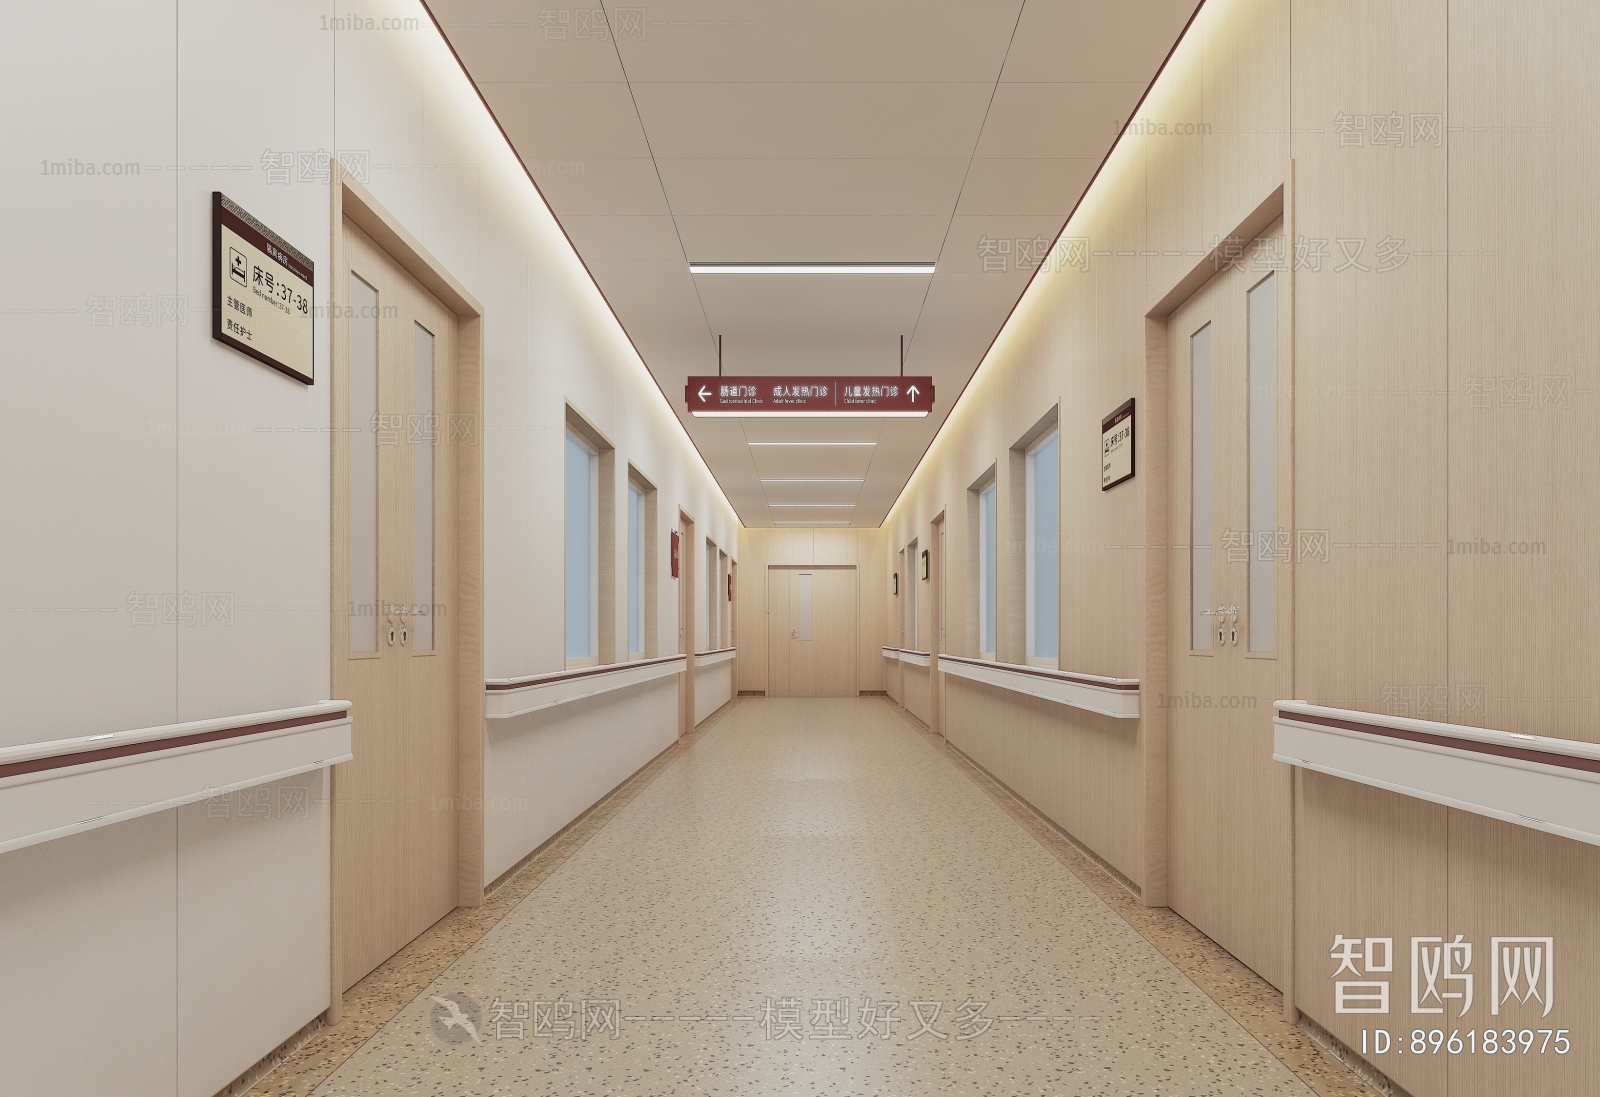 现代医院过道 走廊